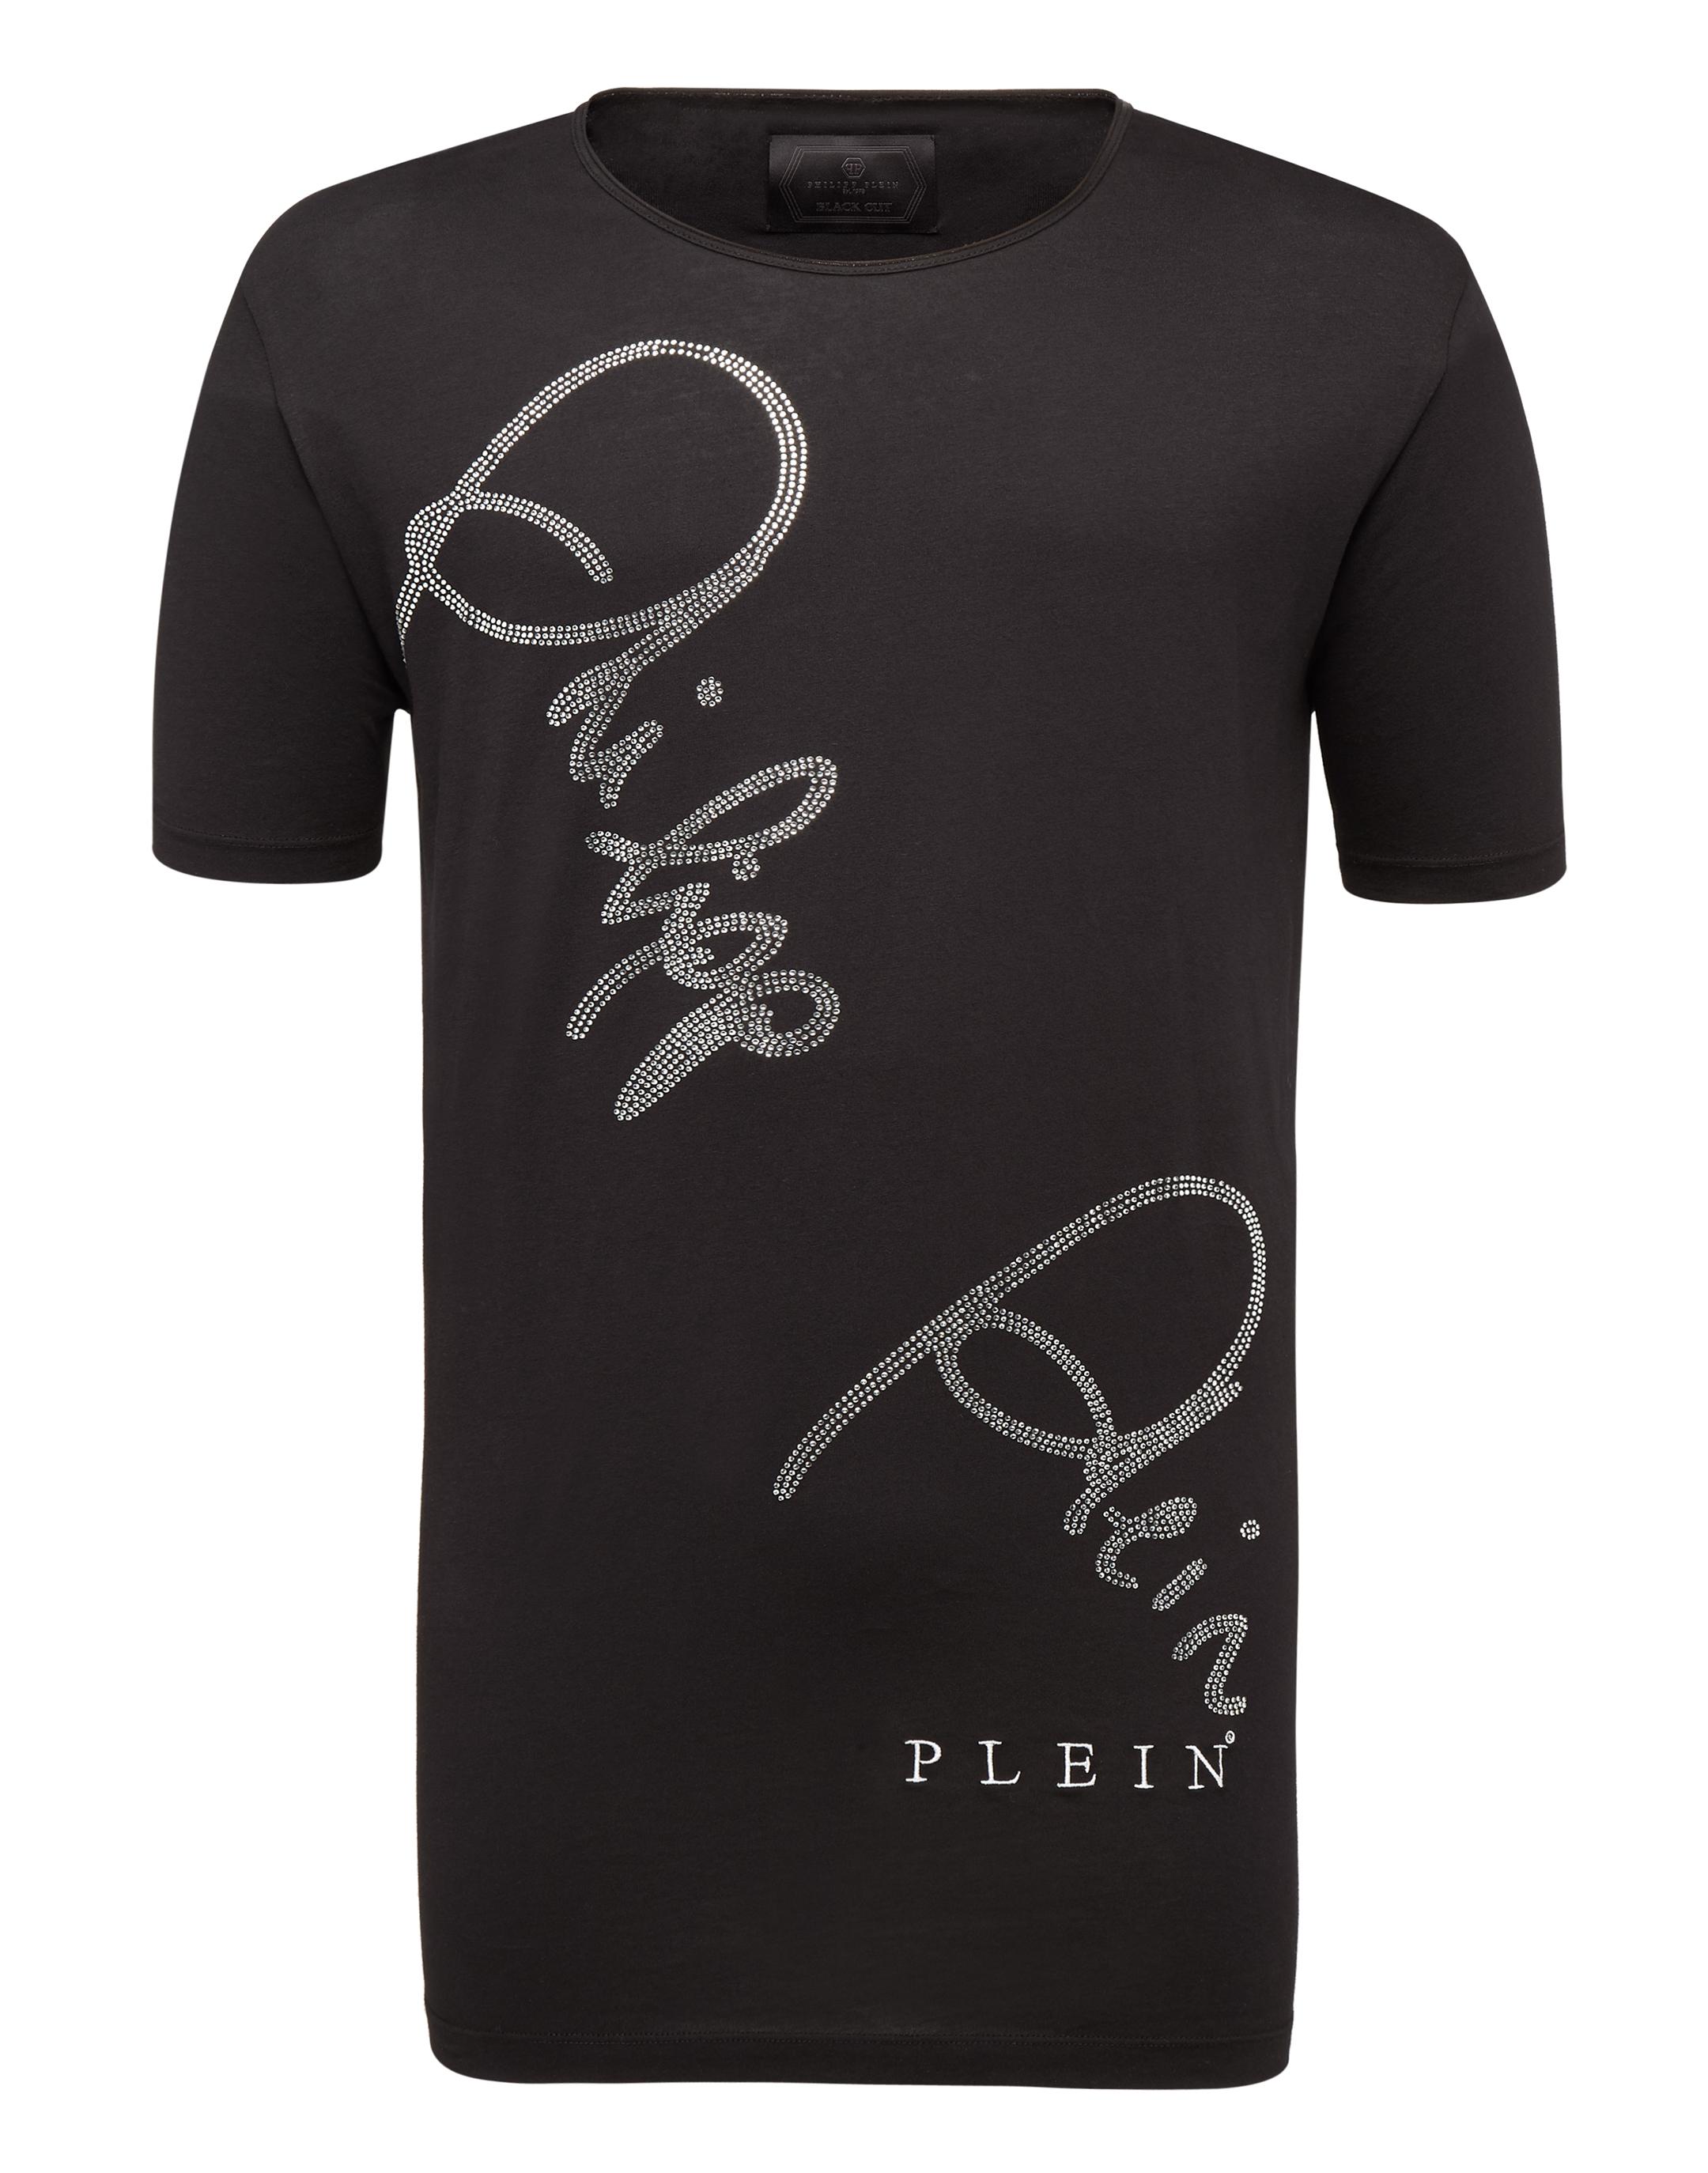 Philipp Plein T-shirt Black Cut Round Neck Live In Black/silver | ModeSens